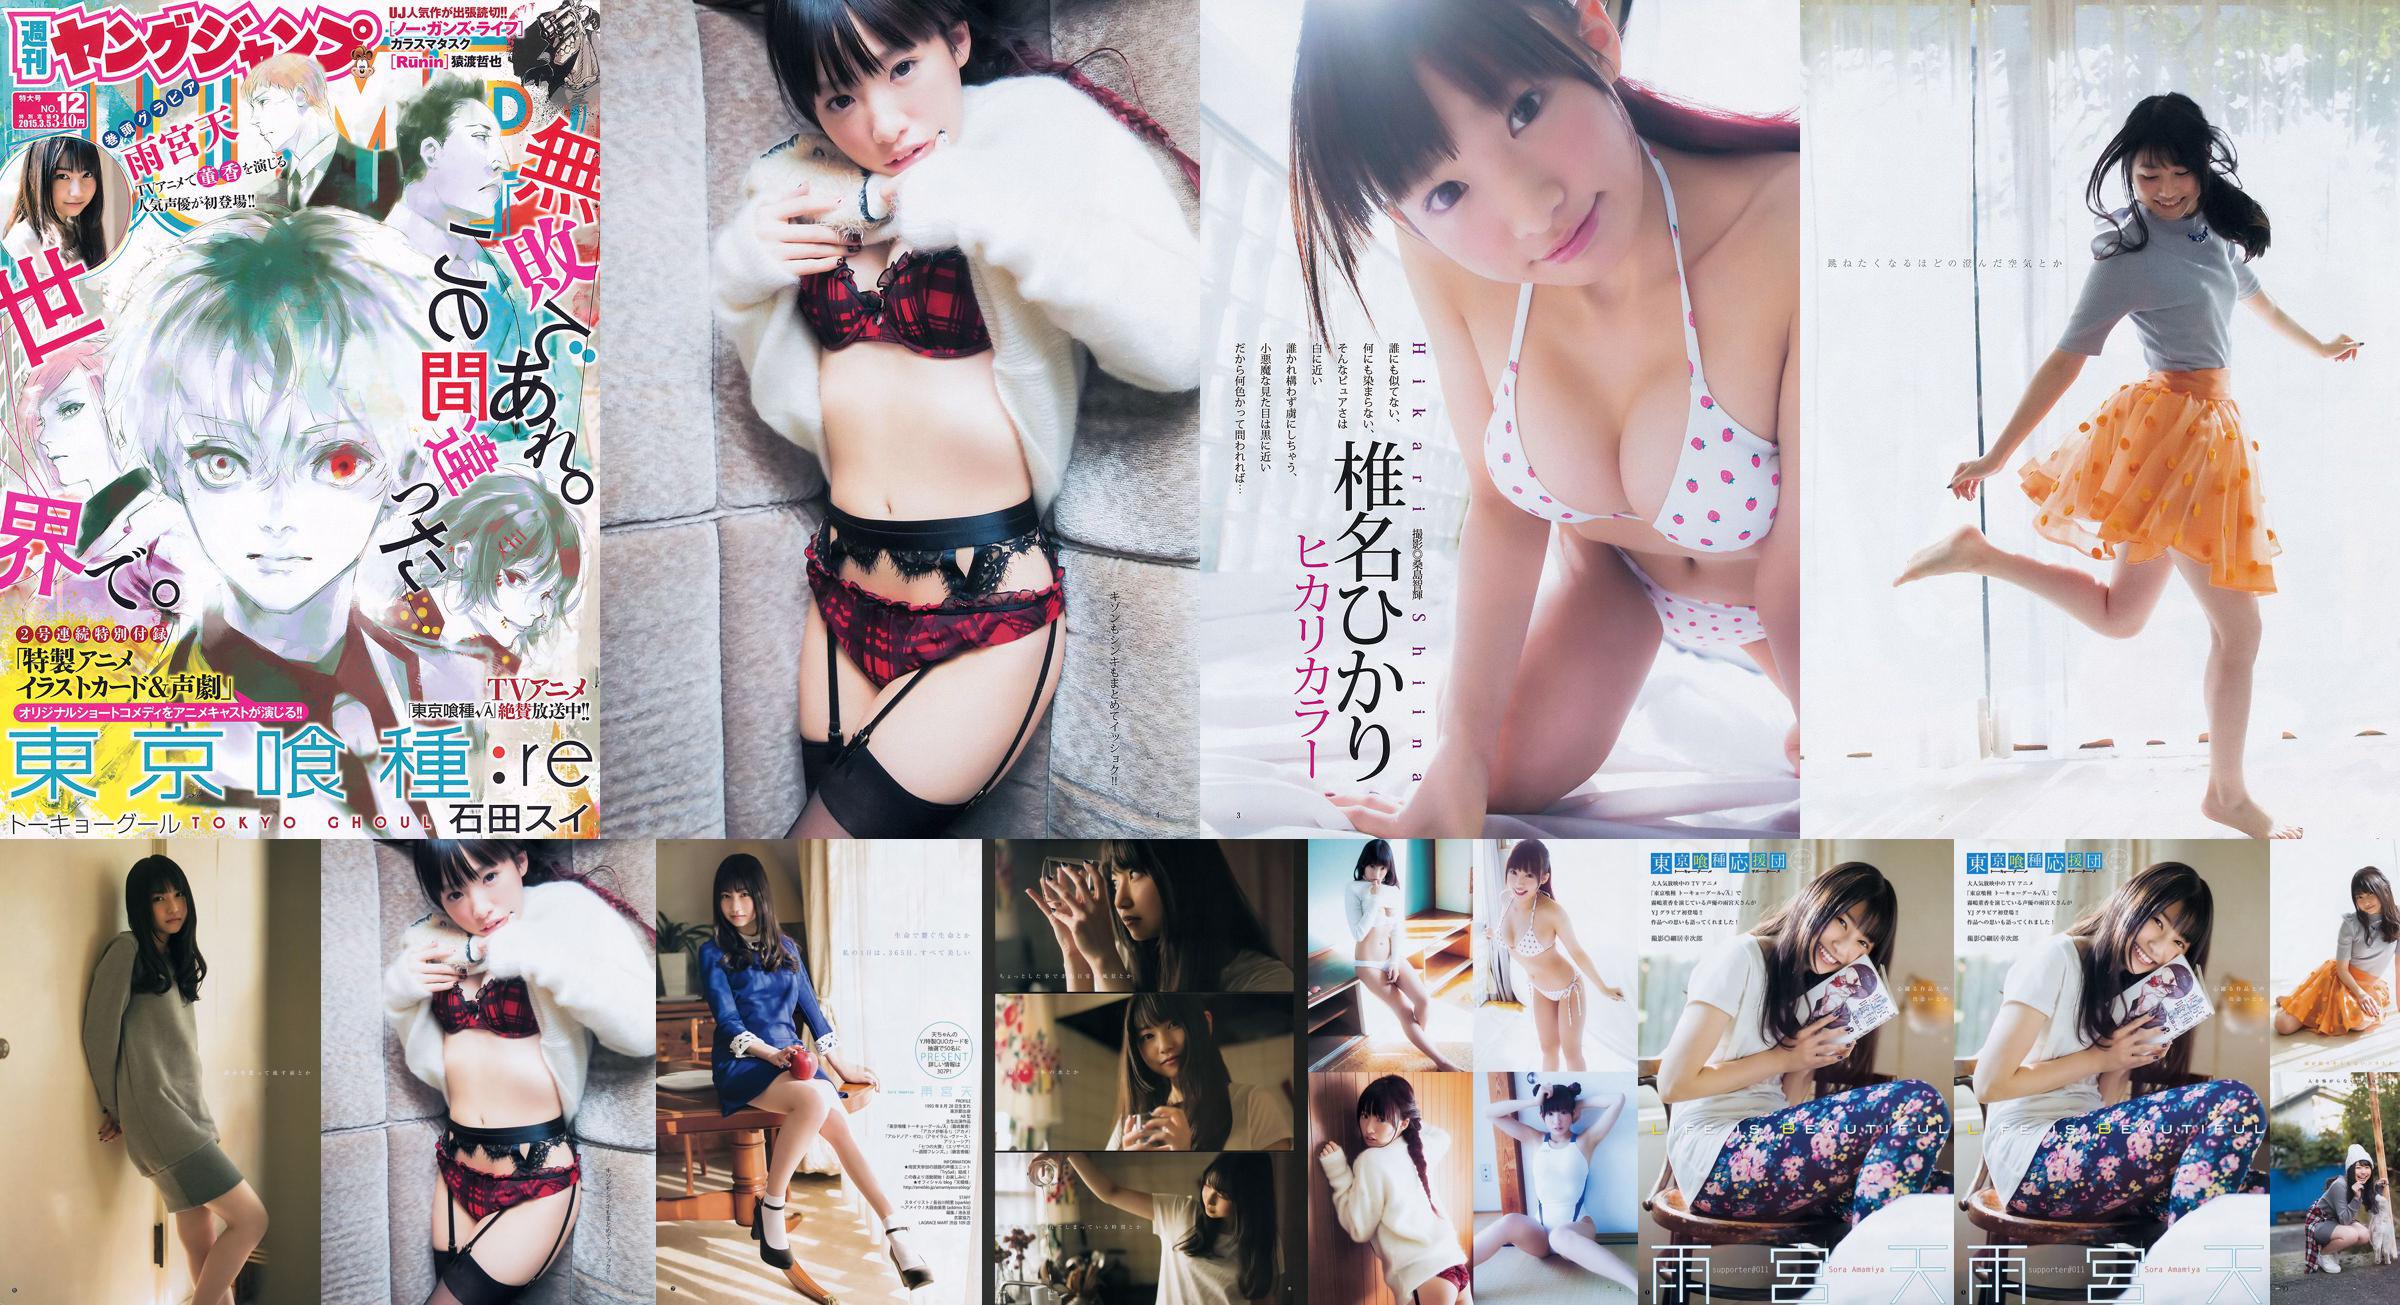 雨宮天 椎名ひかり [Weekly Young Jump] 2015年No.12 写真杂志 No.6eb2ef 第1頁